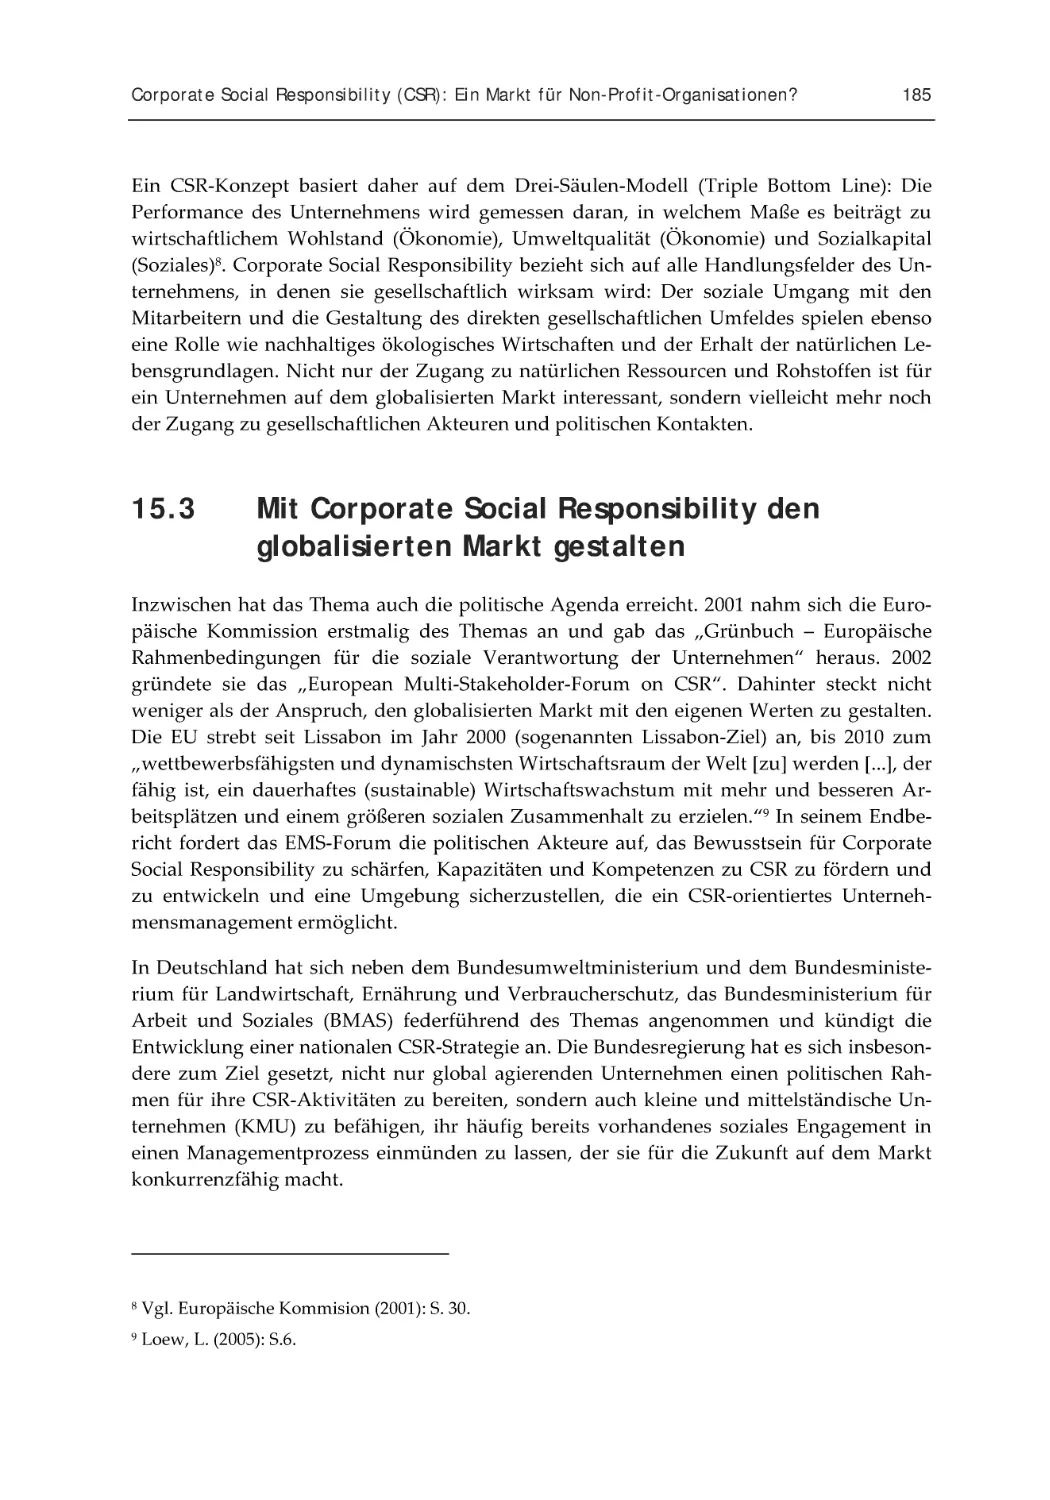 15.3 Mit Corporate Social Responsibility den globalisierten Markt gestalten